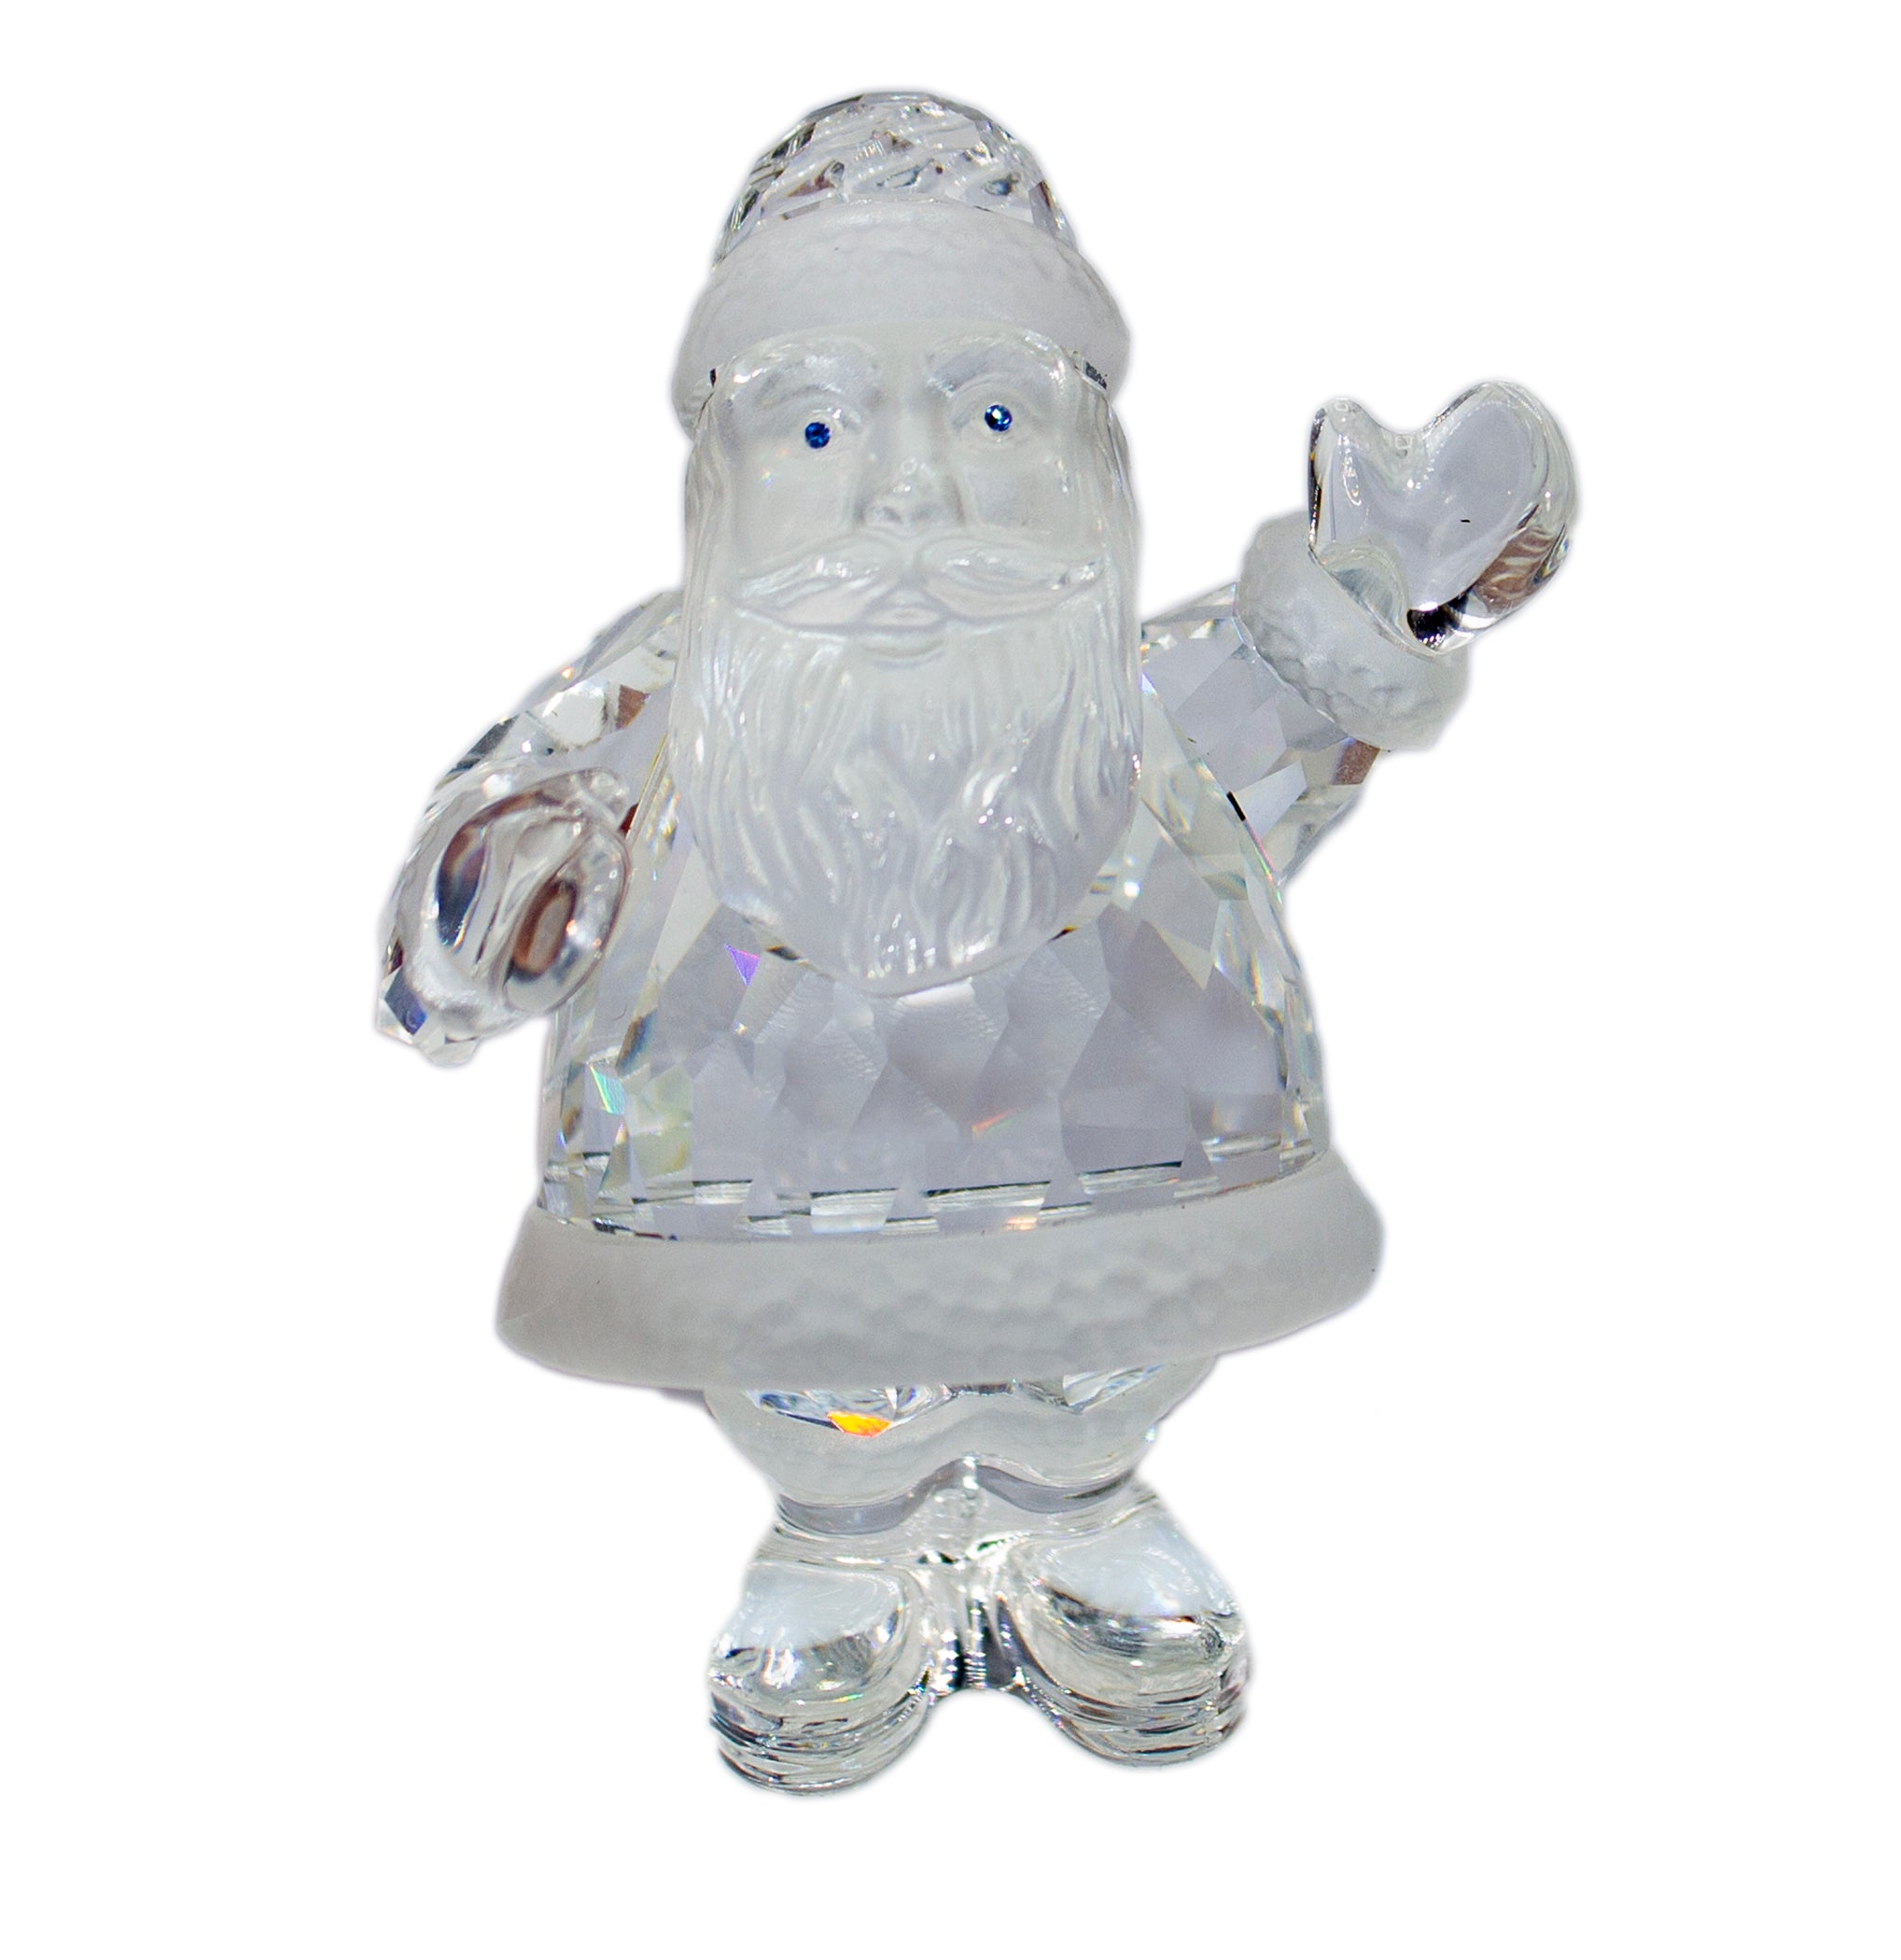 Swarovski Figurine: 211362 Santa Claus